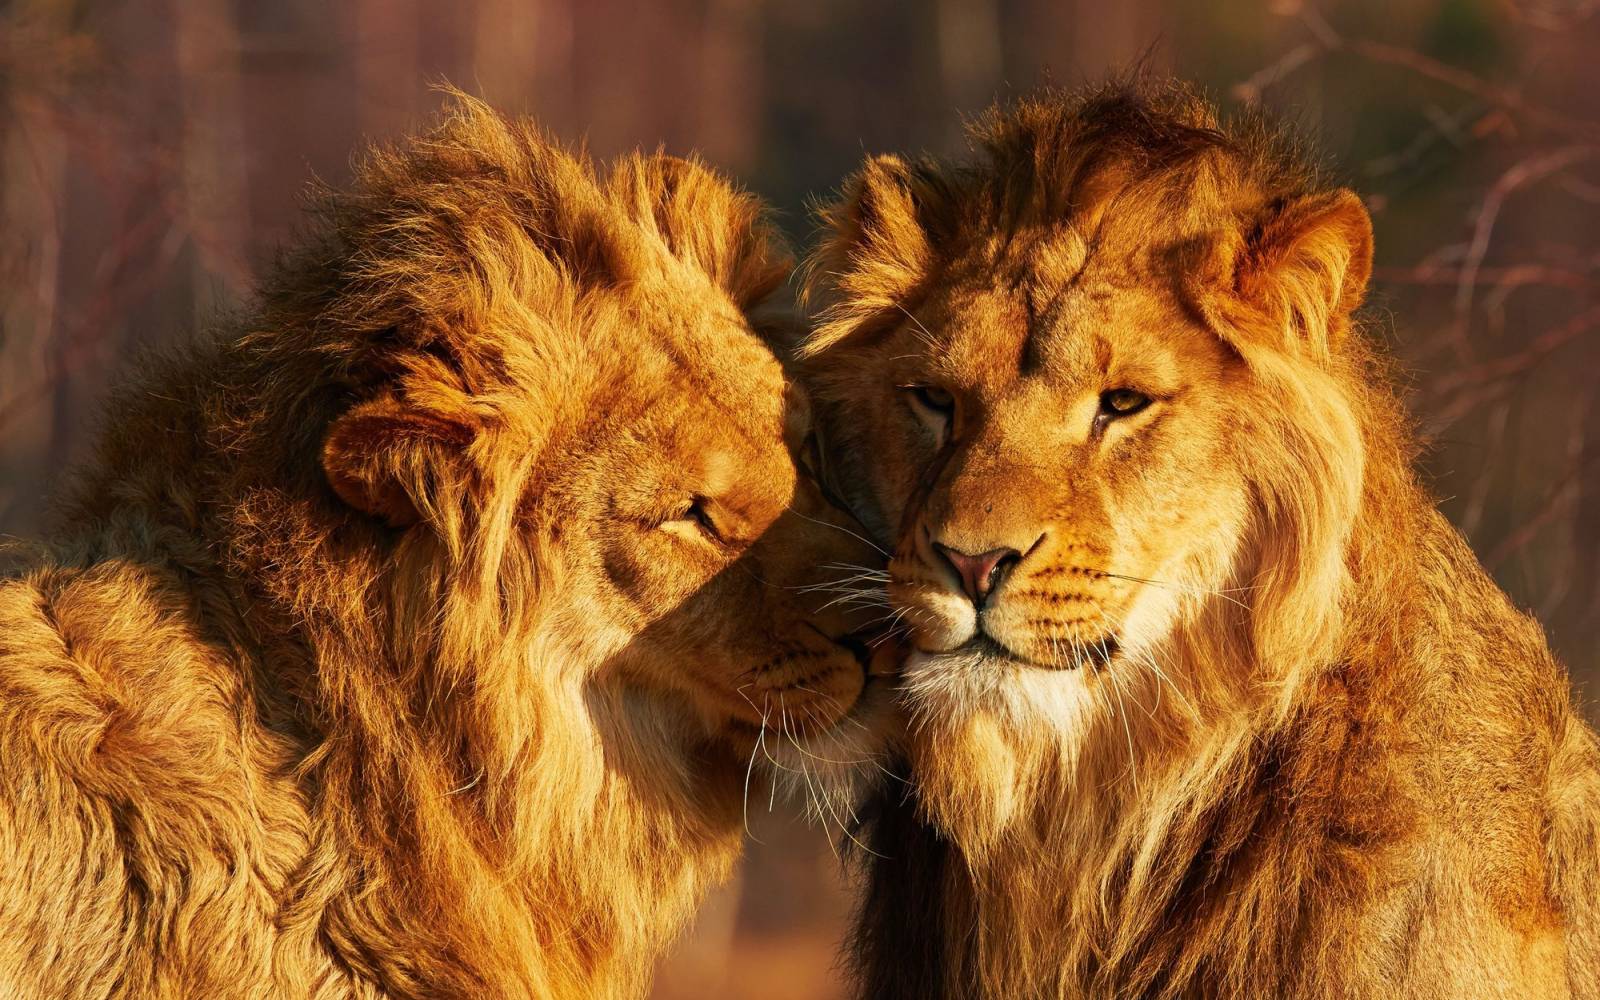 due leoni